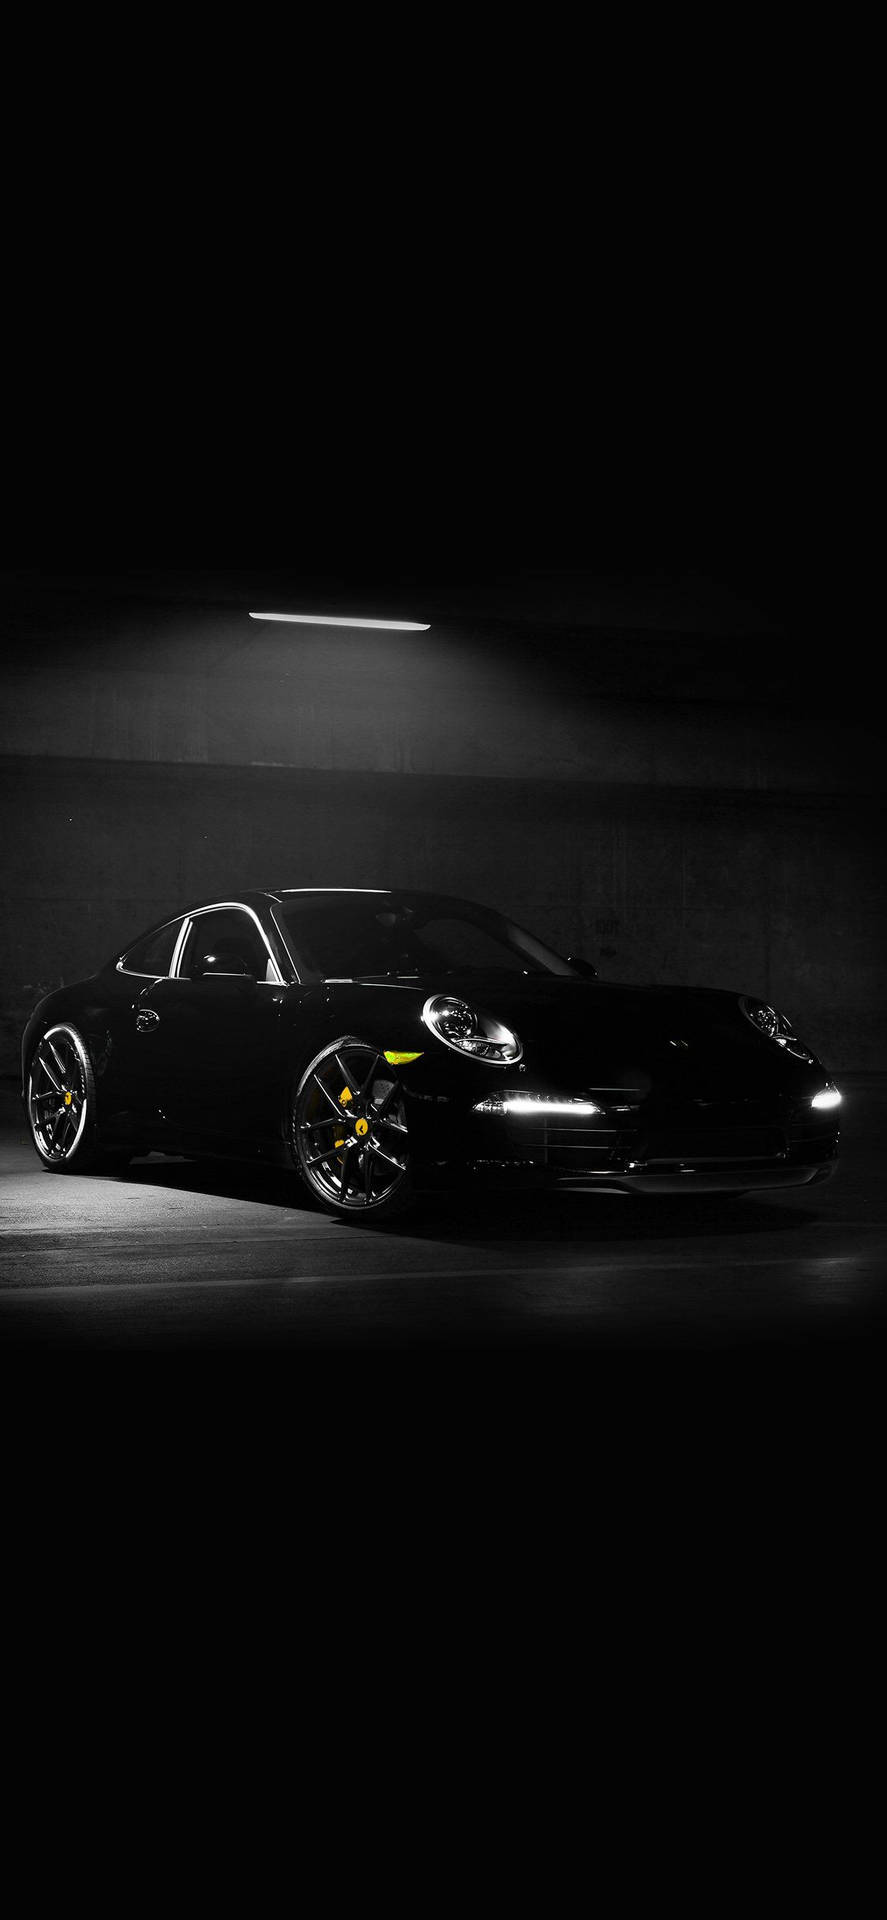 Iphone X Car Black Porsche Background